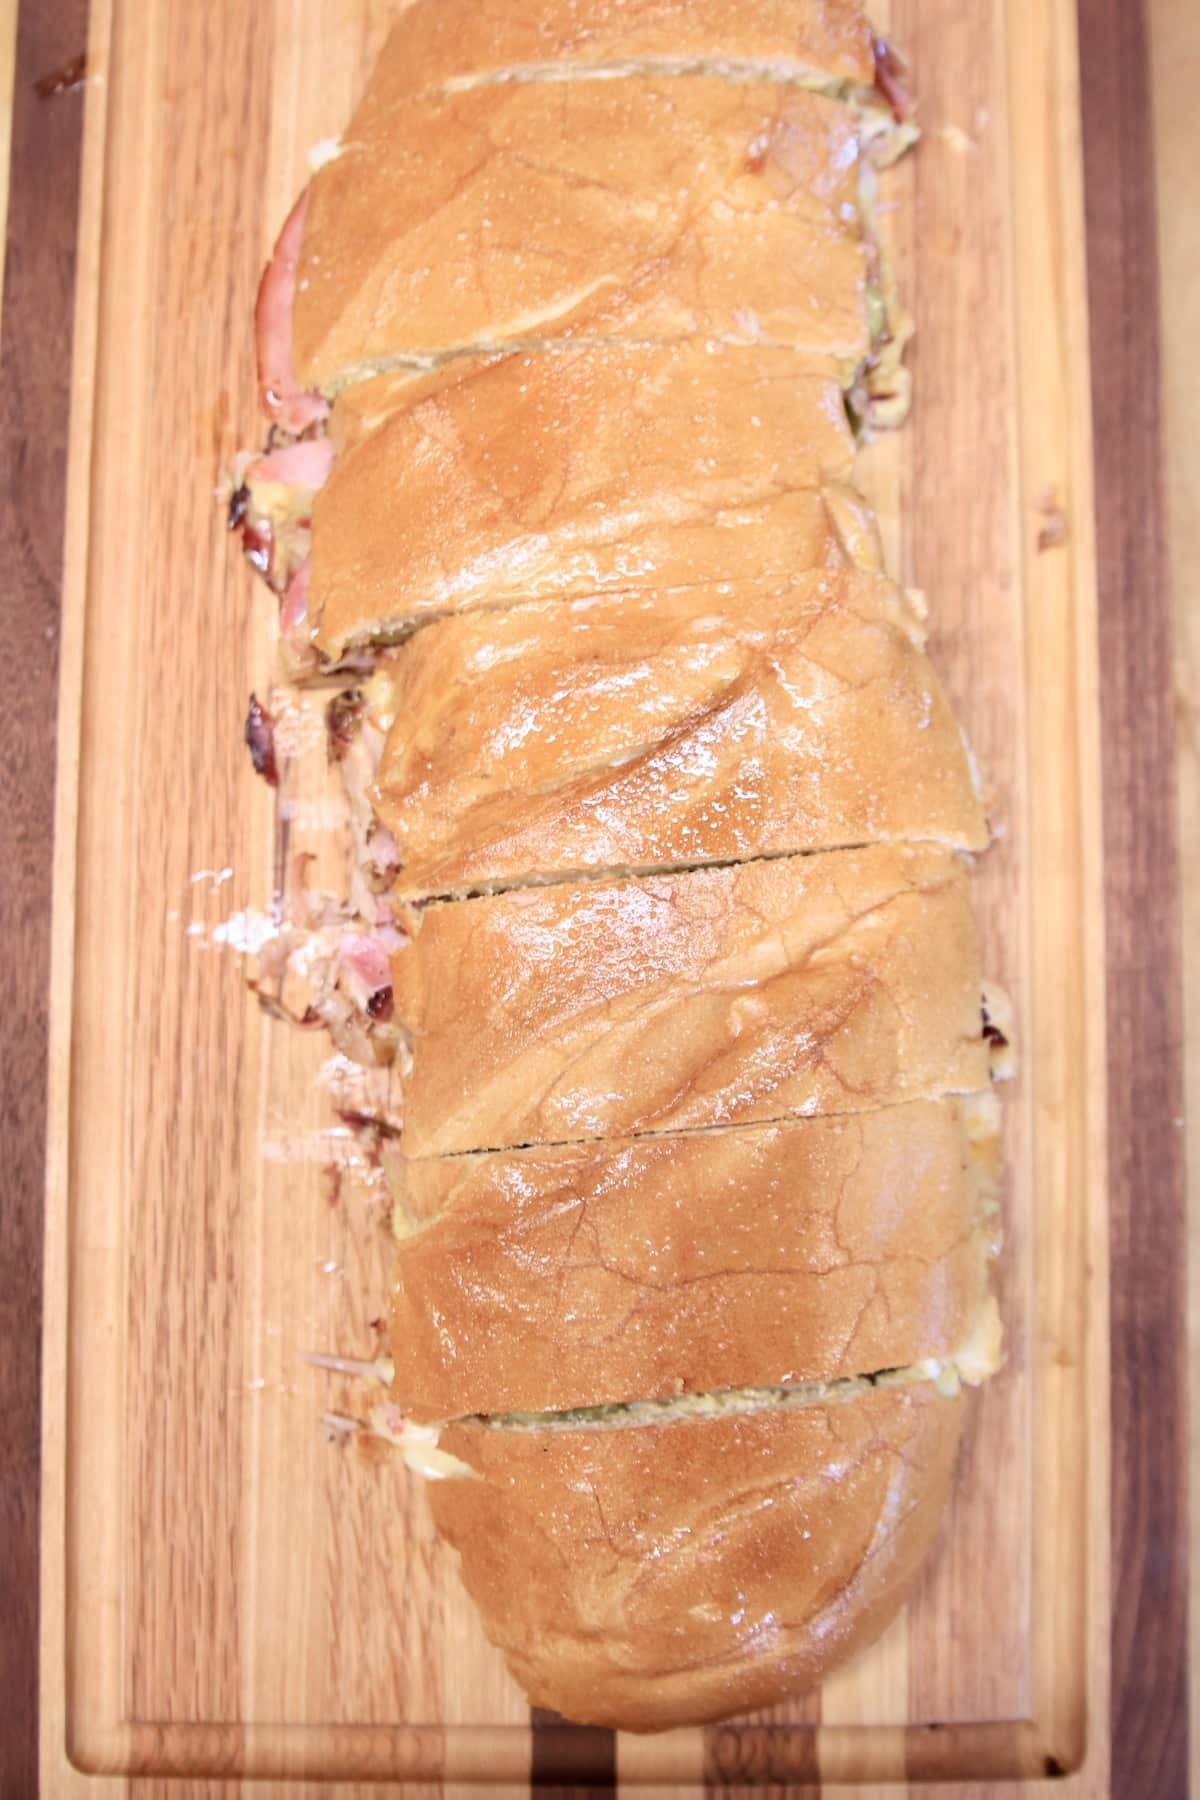 Italian loaf sandwich, sliced on a cutting board.